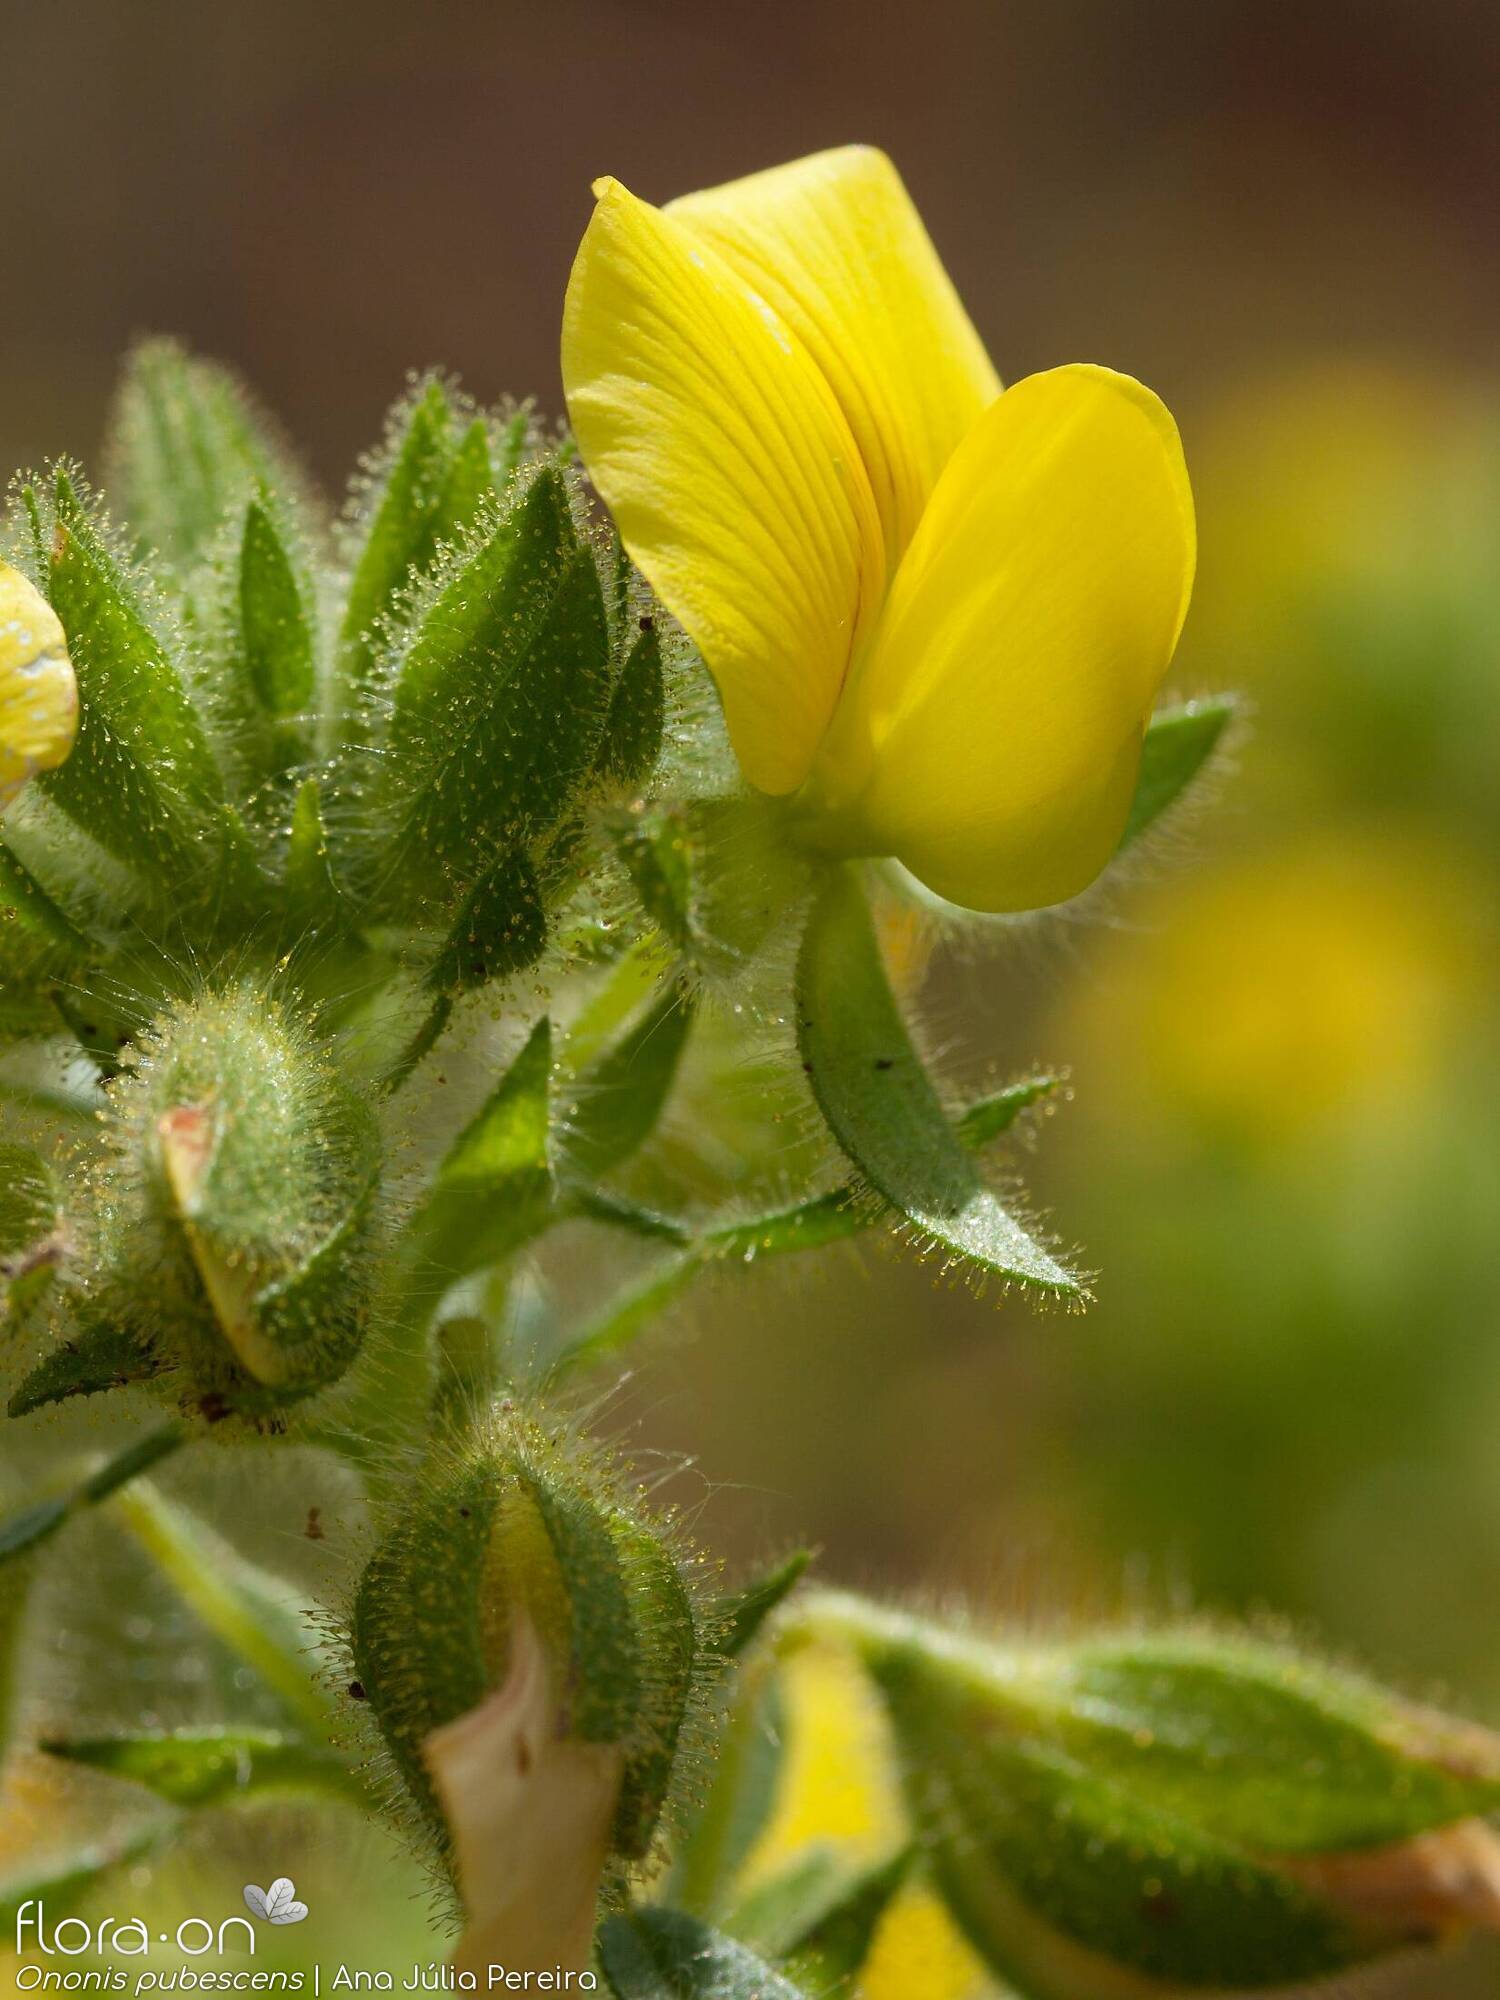 Ononis pubescens - Flor (close-up) | Ana Júlia Pereira; CC BY-NC 4.0